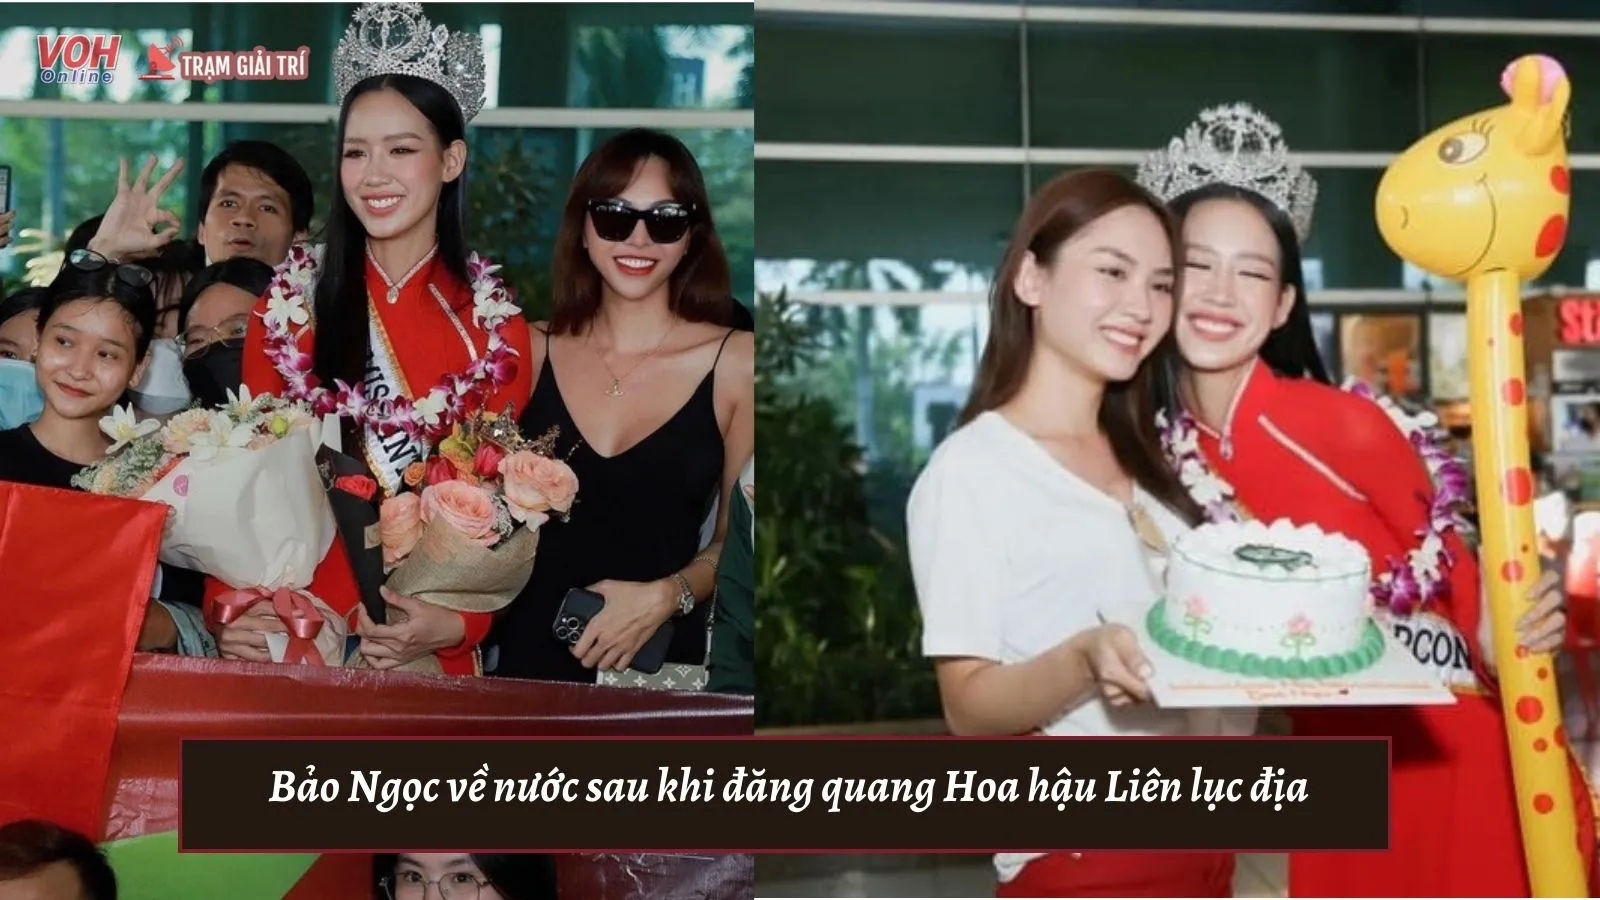 Bảo Ngọc về nước sau khi đăng quang Hoa hậu Liên lục địa, Minh Triệu ra đón học trò cưng